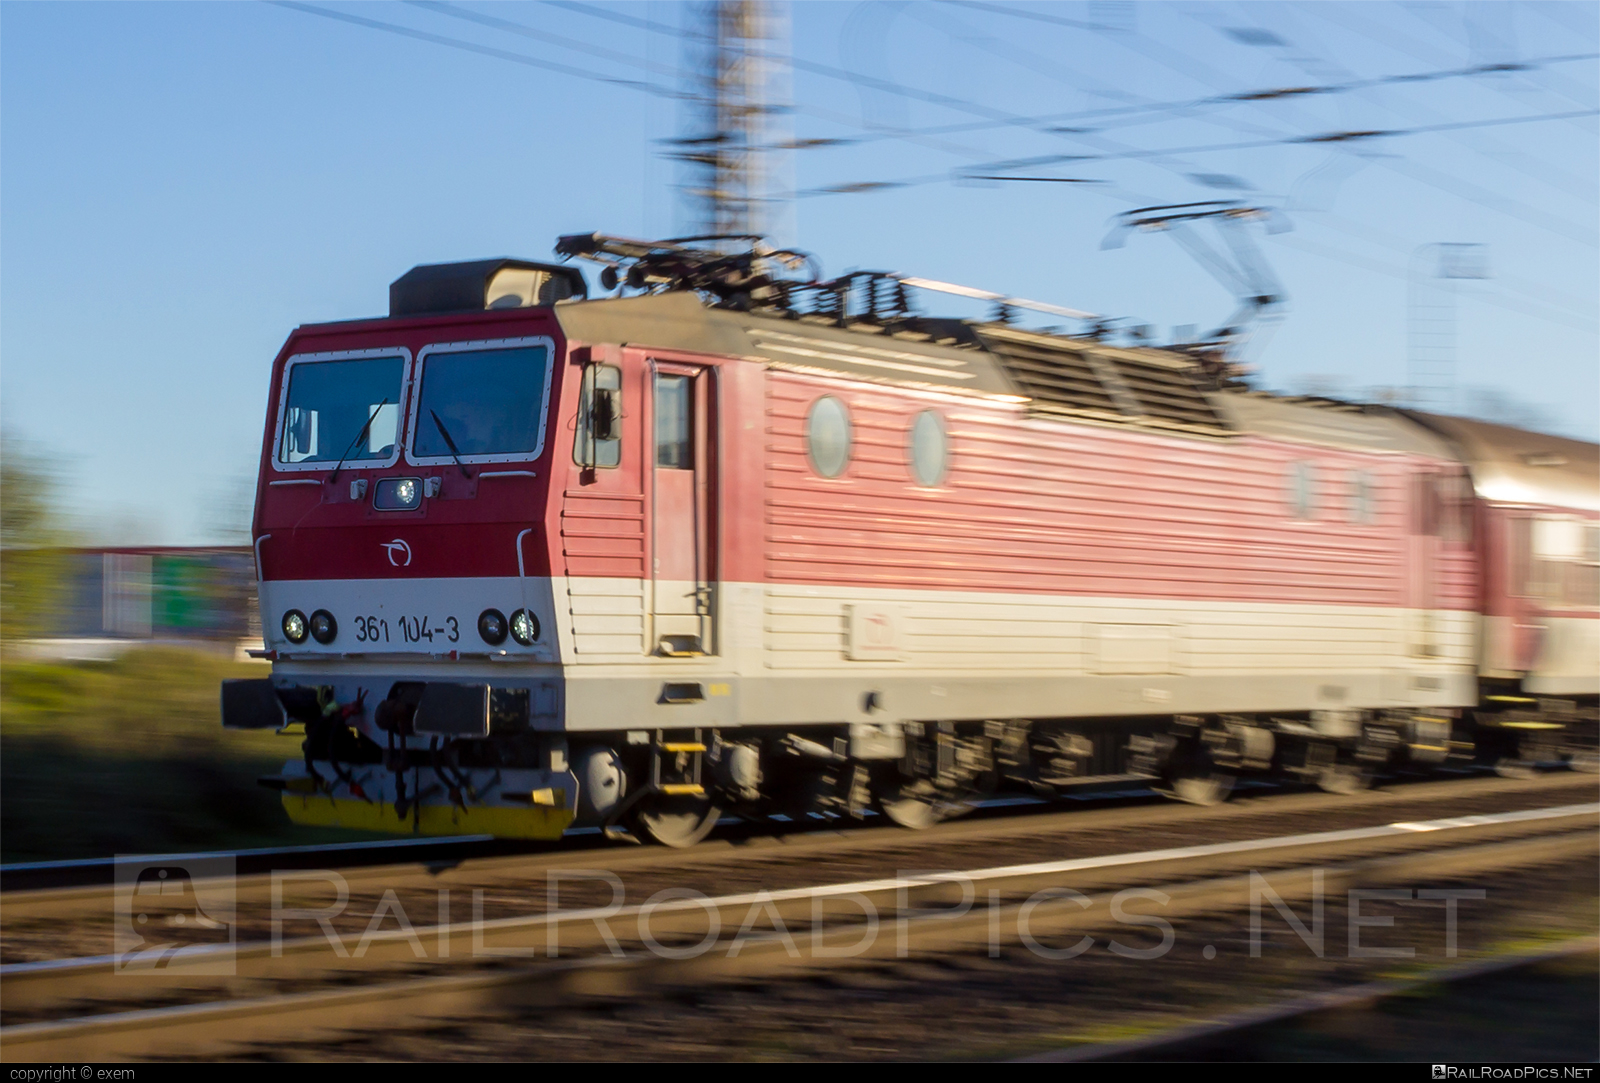 ŽOS Vrútky Class 361.1 - 361 104-3 operated by Železničná Spoločnost' Slovensko, a.s. #ZeleznicnaSpolocnostSlovensko #locomotive361 #locomotive3611 #zosvrutky #zssk